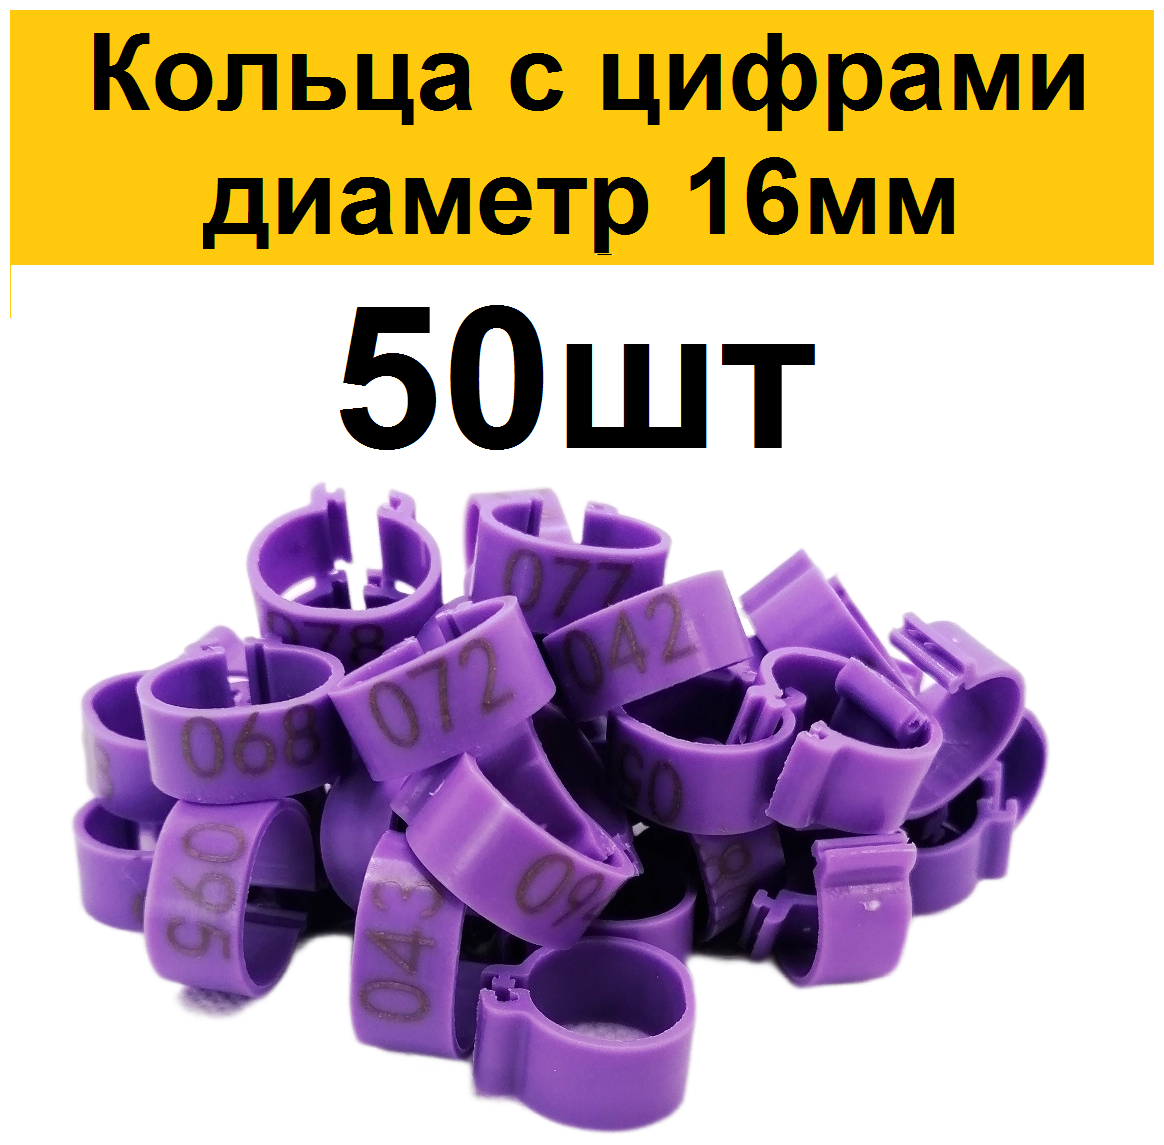 Меточные кольца с цифрами на лапу для кур (50шт) фиолетовый. Маркировочные метки для маркировки кольцевания курей несушек, фазанов, цыплят бройлеров